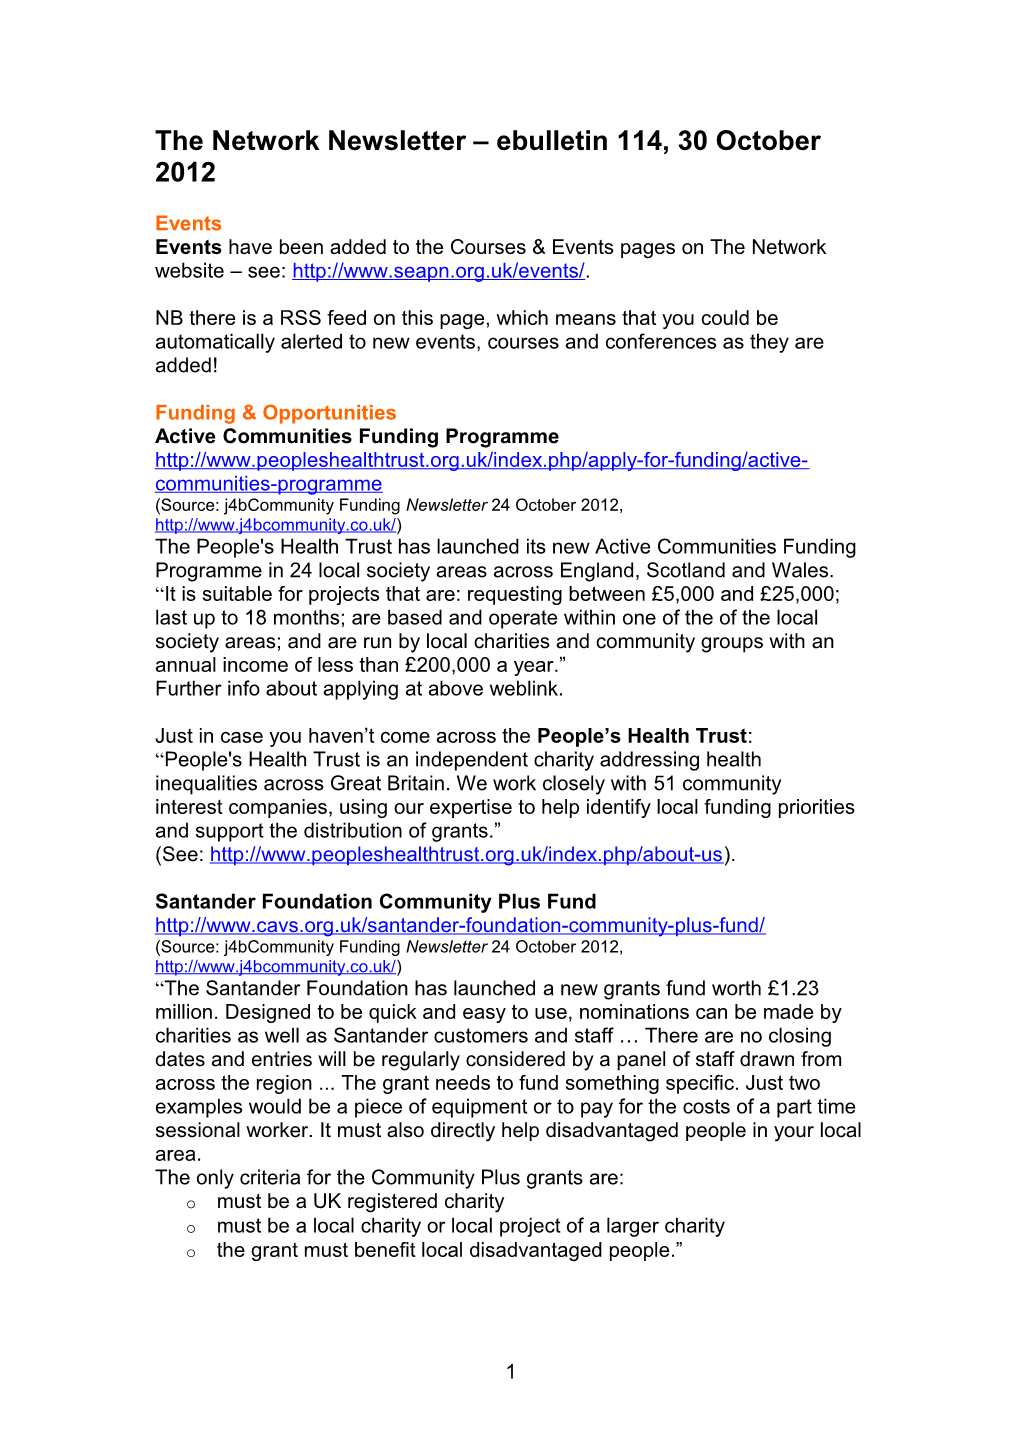 The Network Newsletter Ebulletin 1, 14 April 2008 s6